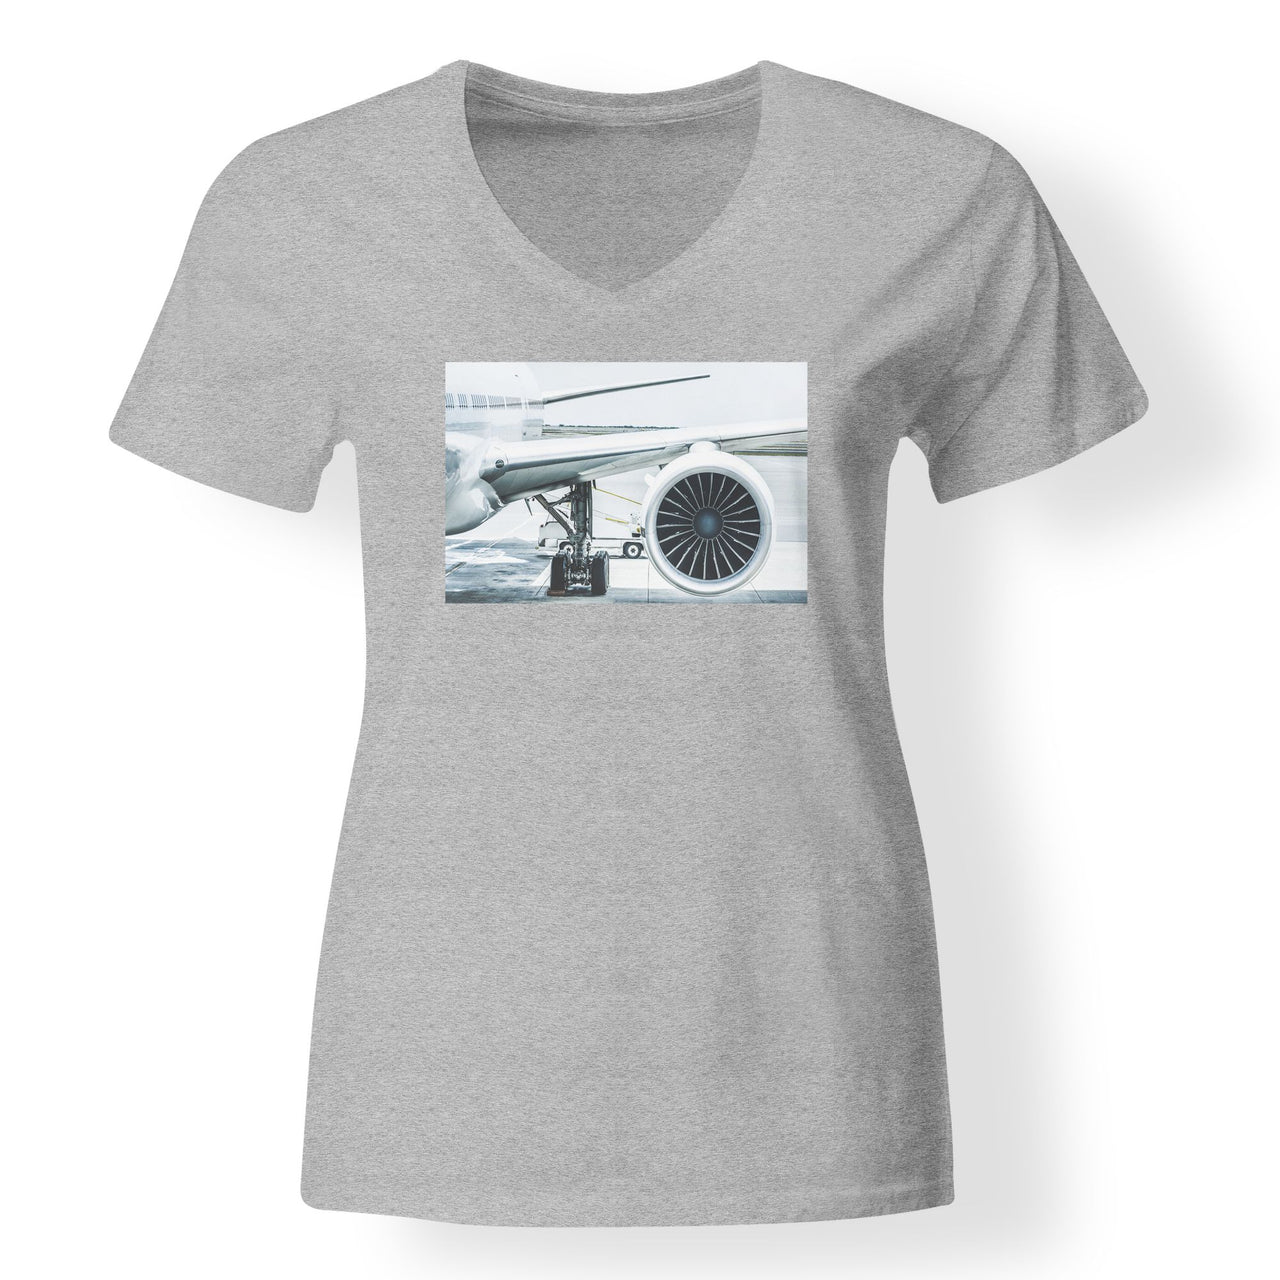 Amazing Aircraft & Engine Designed V-Neck T-Shirts